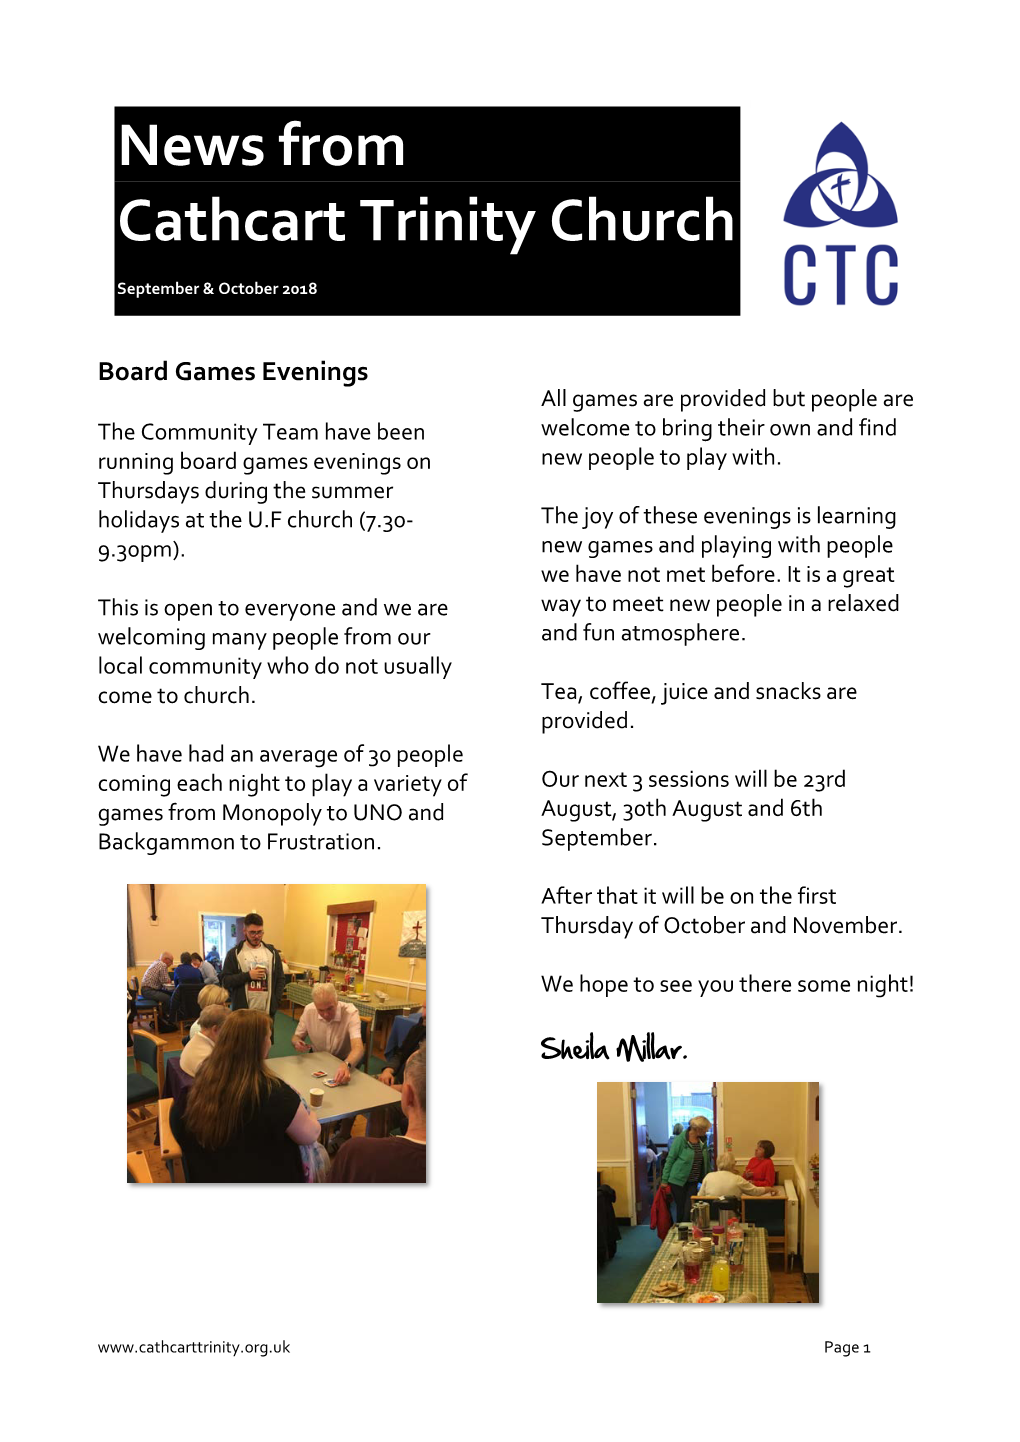 News from Cathcart Trinity Church